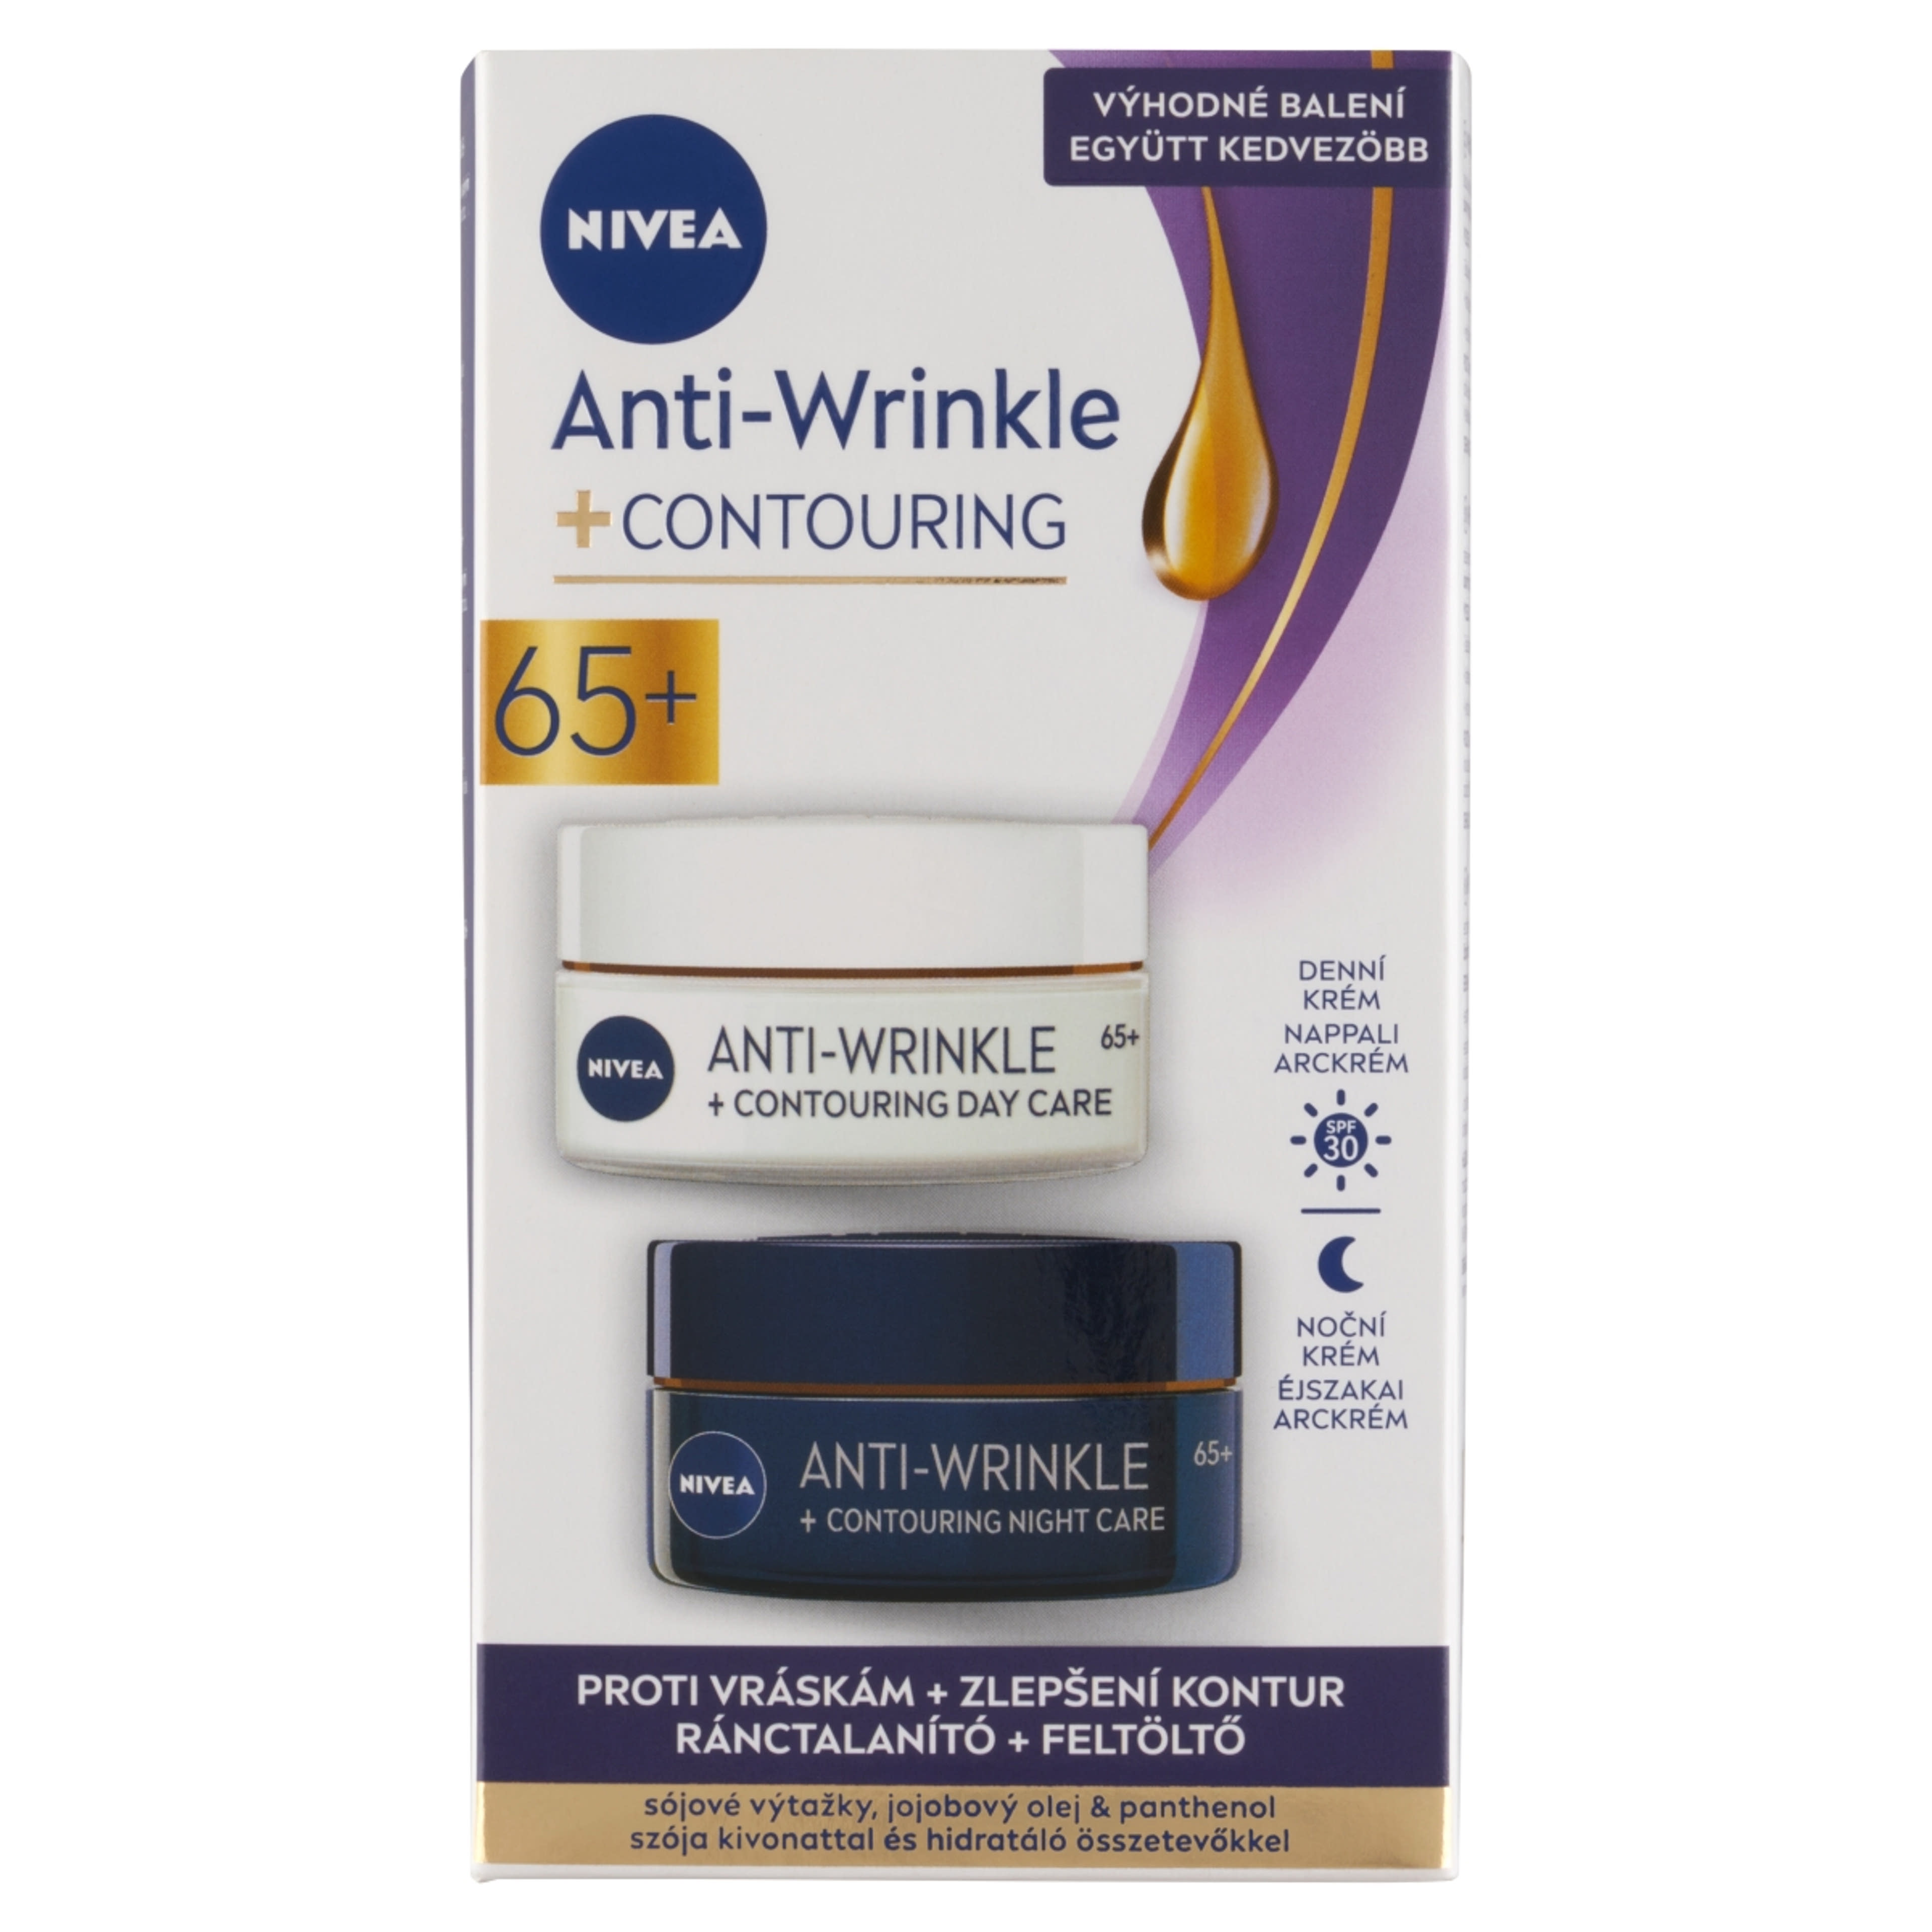 Nivea Anti Wrinkle 65+ ránctalanító nappali + éjszakai krém - 1 db